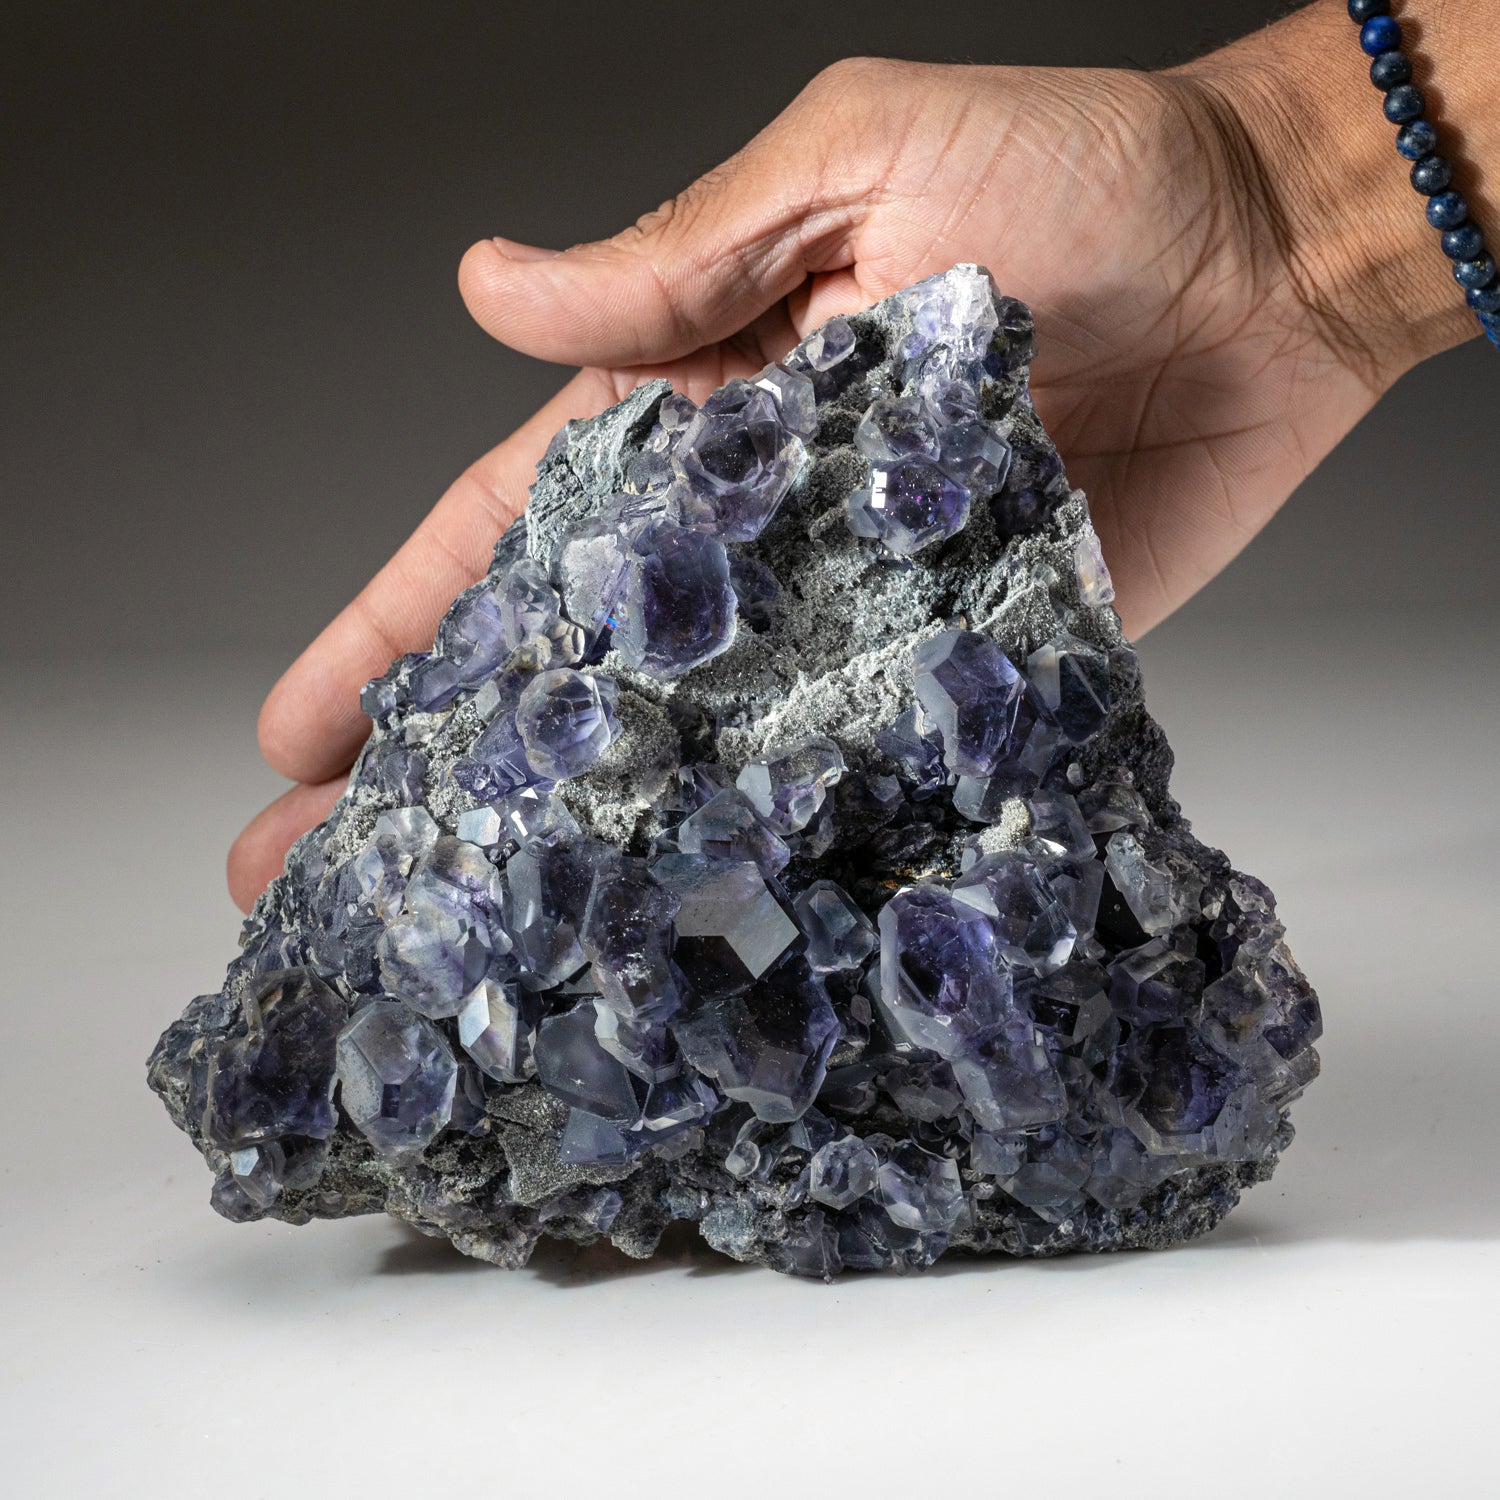 Purple Fluorite from Minggang Mine, Henan Province, China